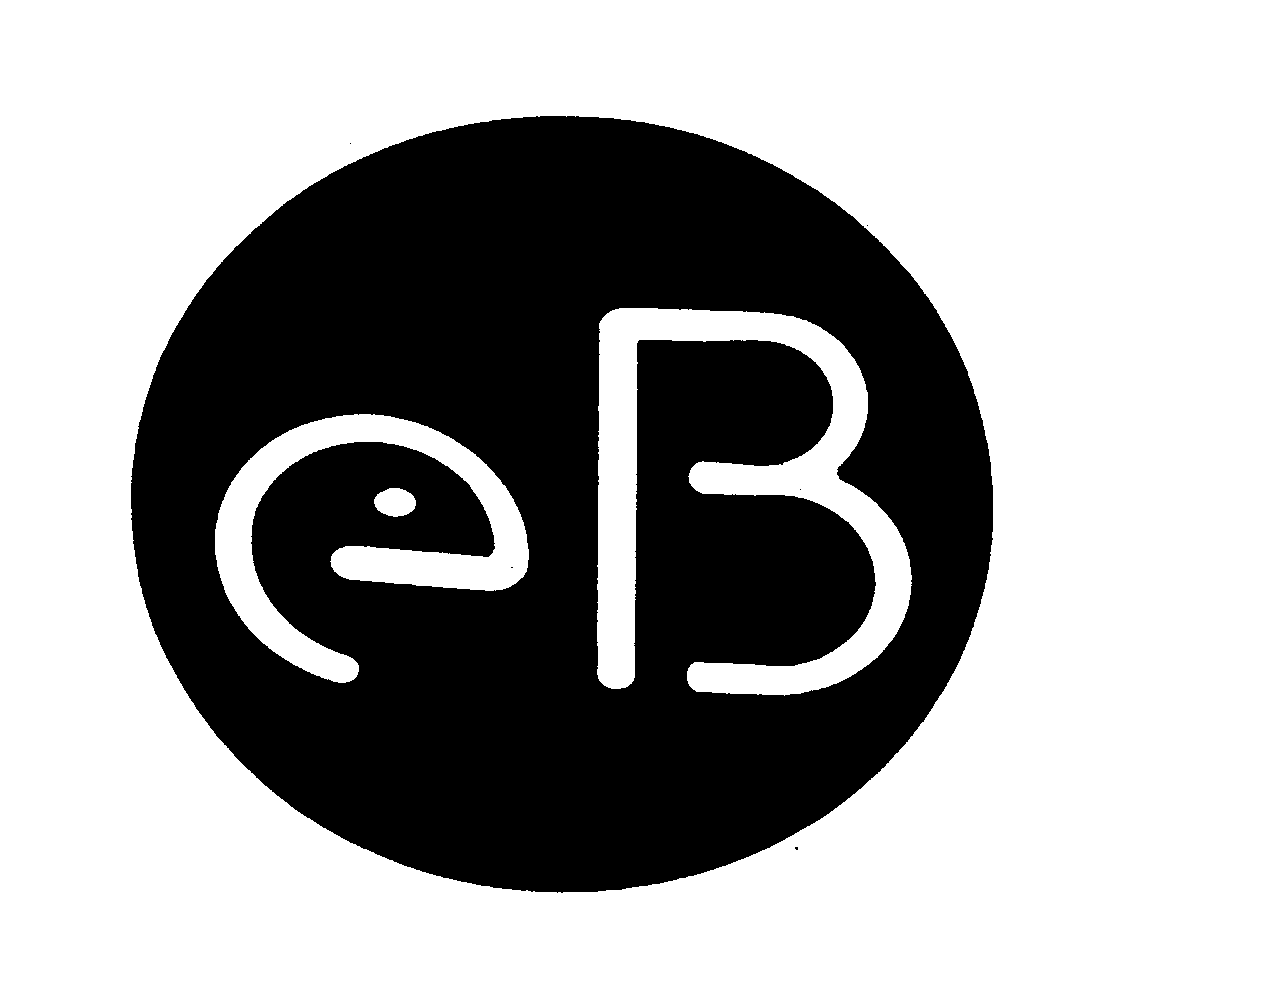  EB